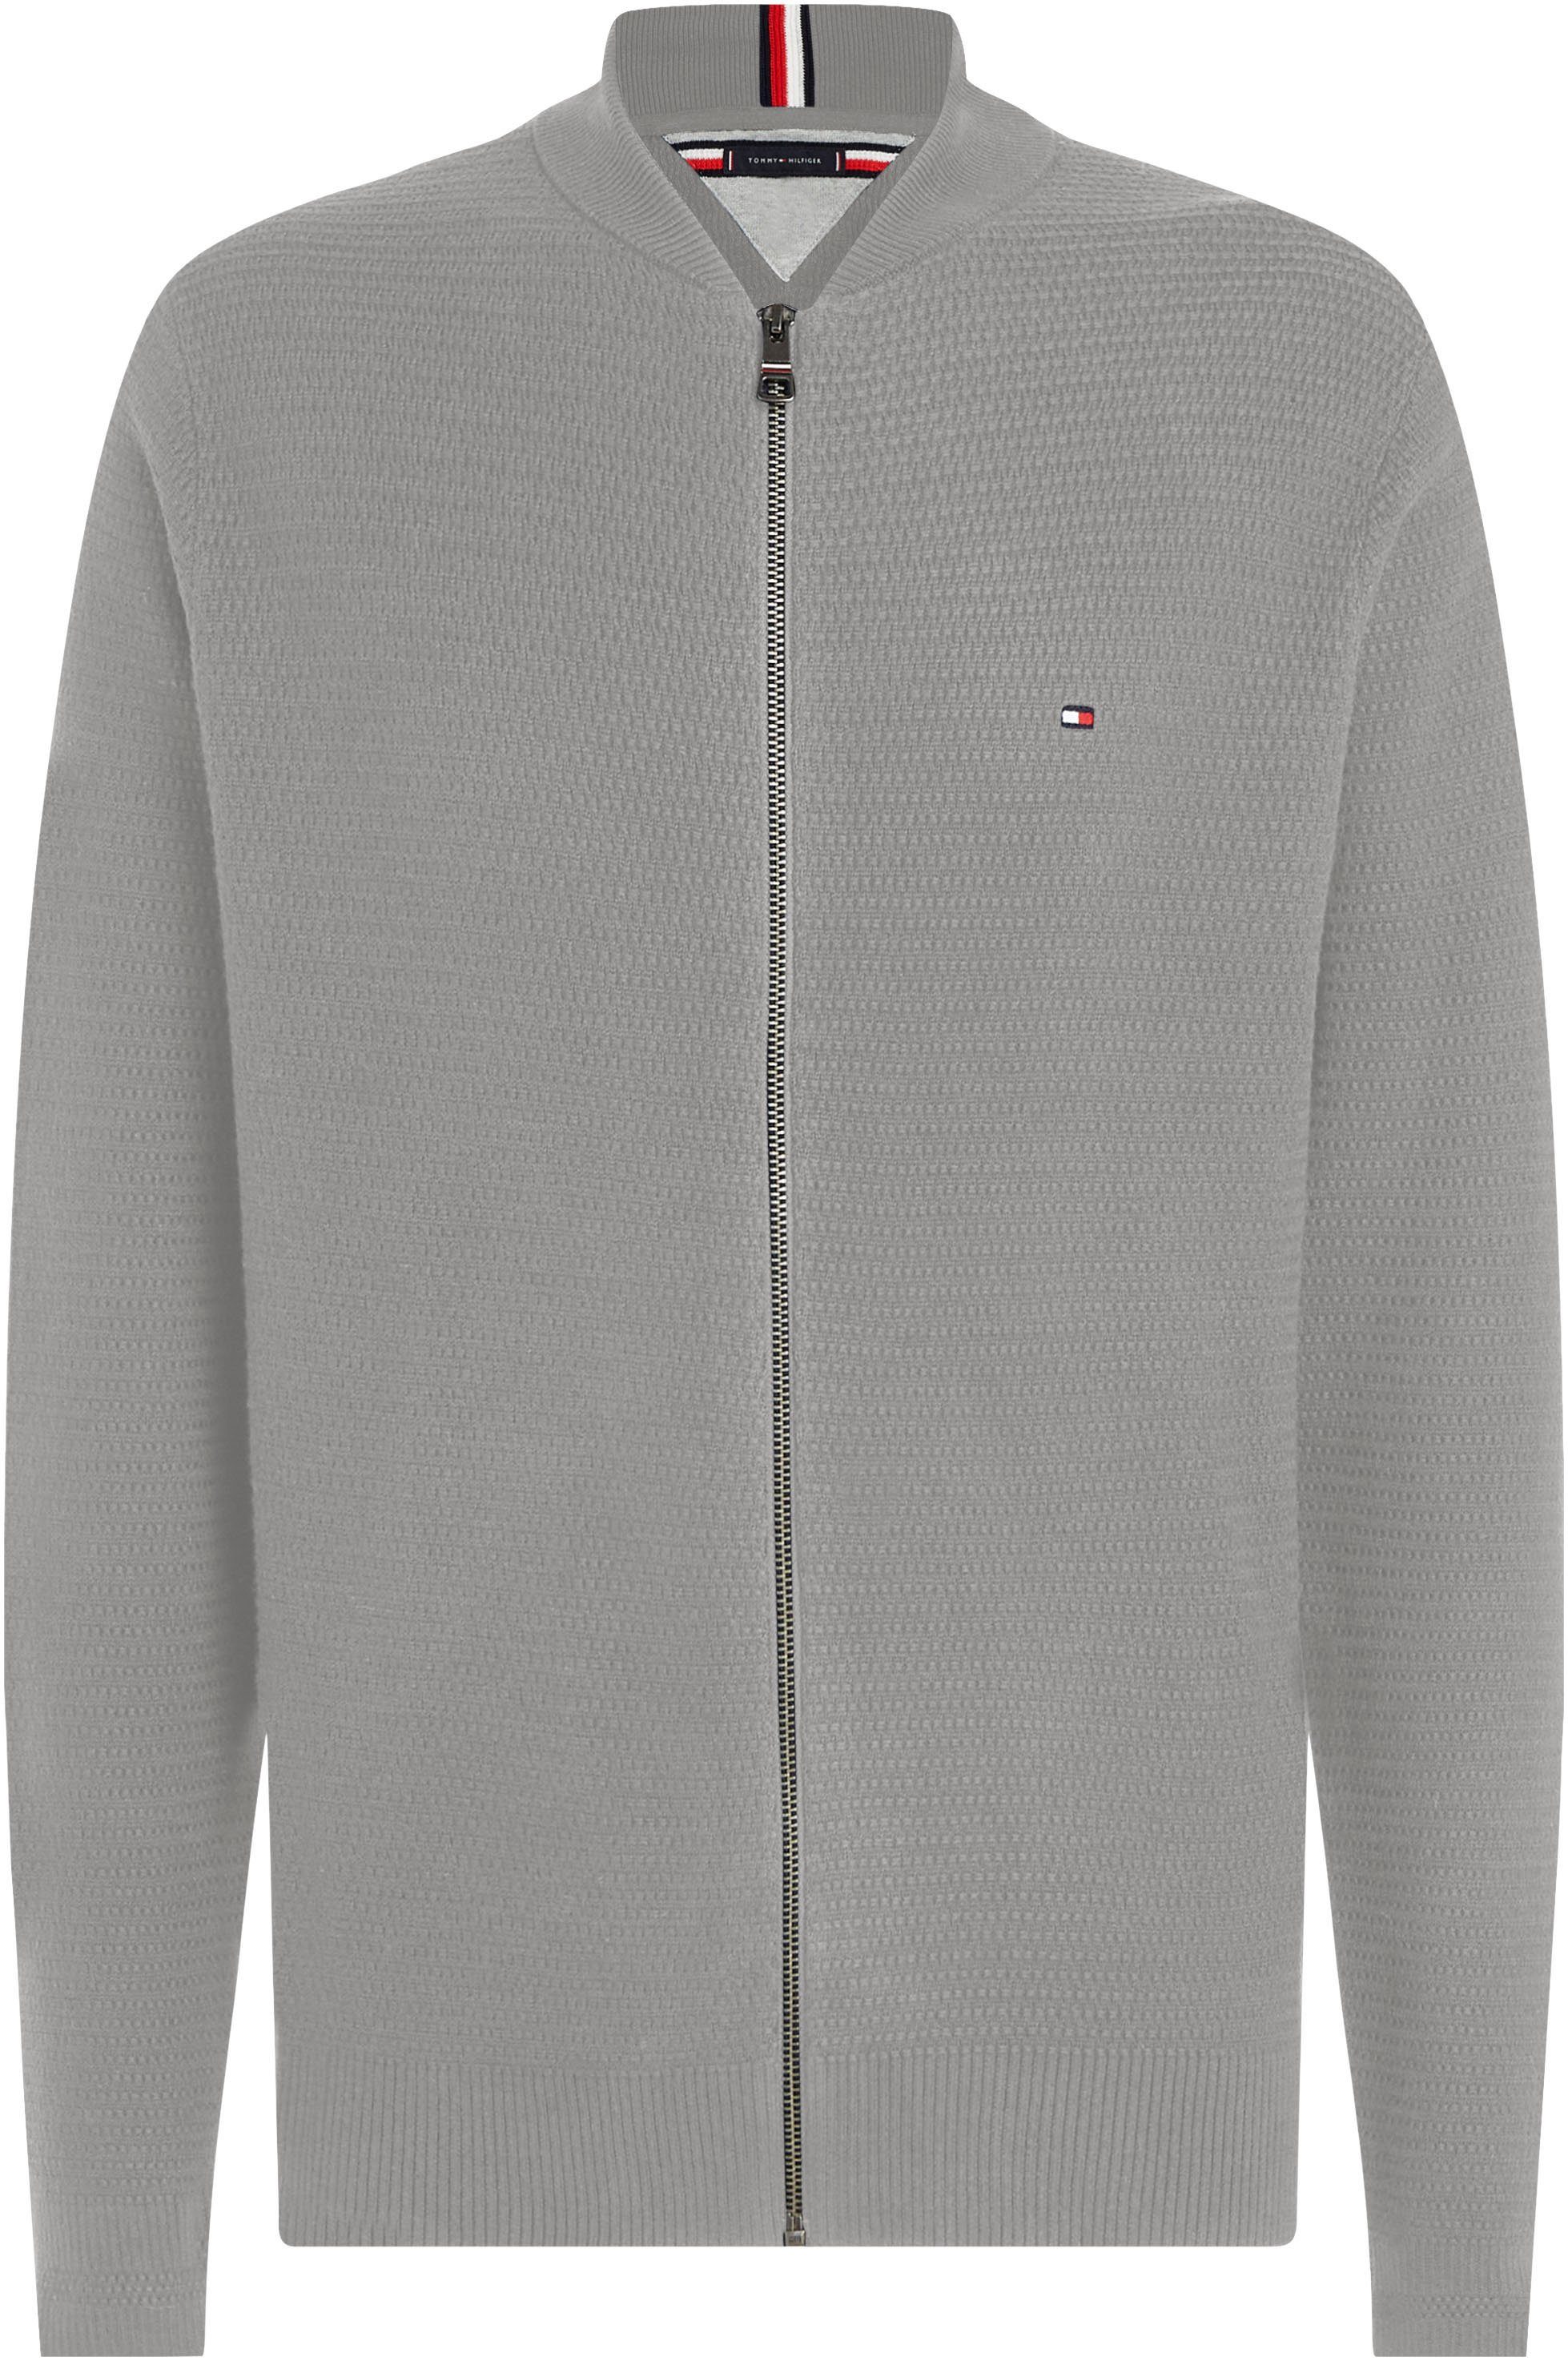 Hilfiger Optik strukturierter INTERLACED ZIP Tommy THROUGH in Grey Medium Sweatshirt BASEBALL Heather